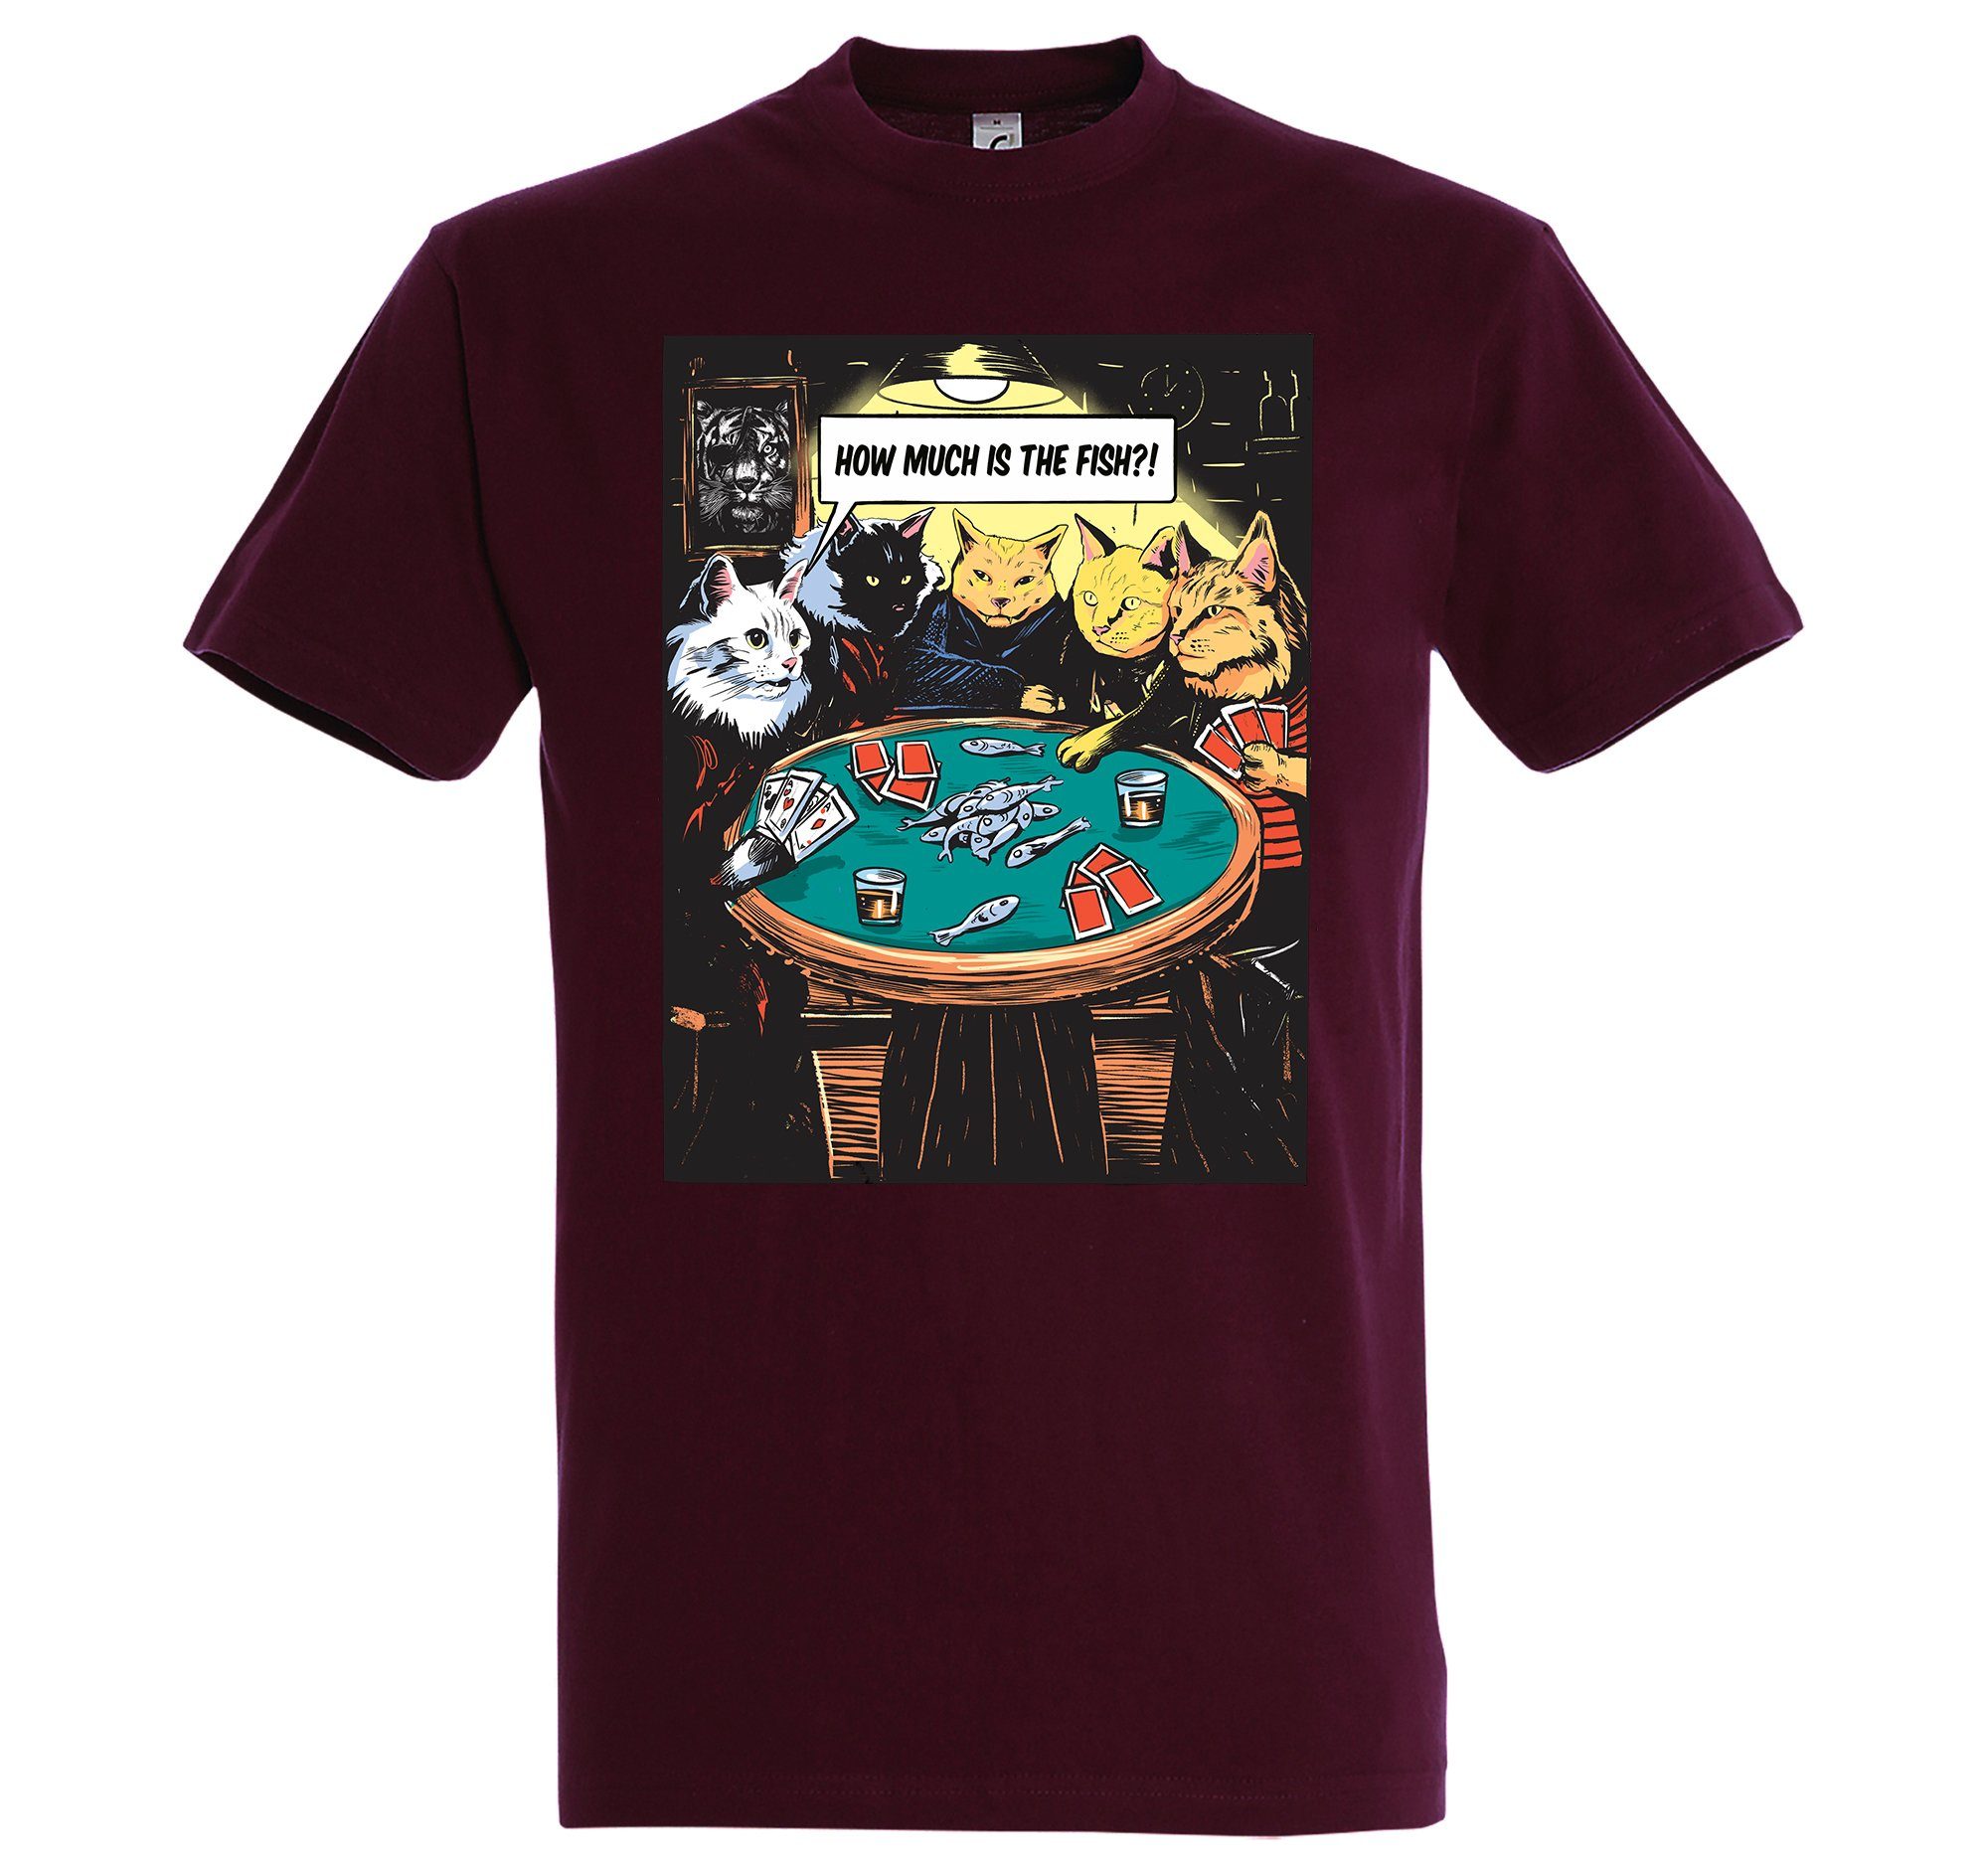 Extrem beliebter Online-Verkauf von Neuware Youth Designz T-Shirt Herren Burgund "How Frontprint Shirt The Fish?" mit Poker Is Much trendigem